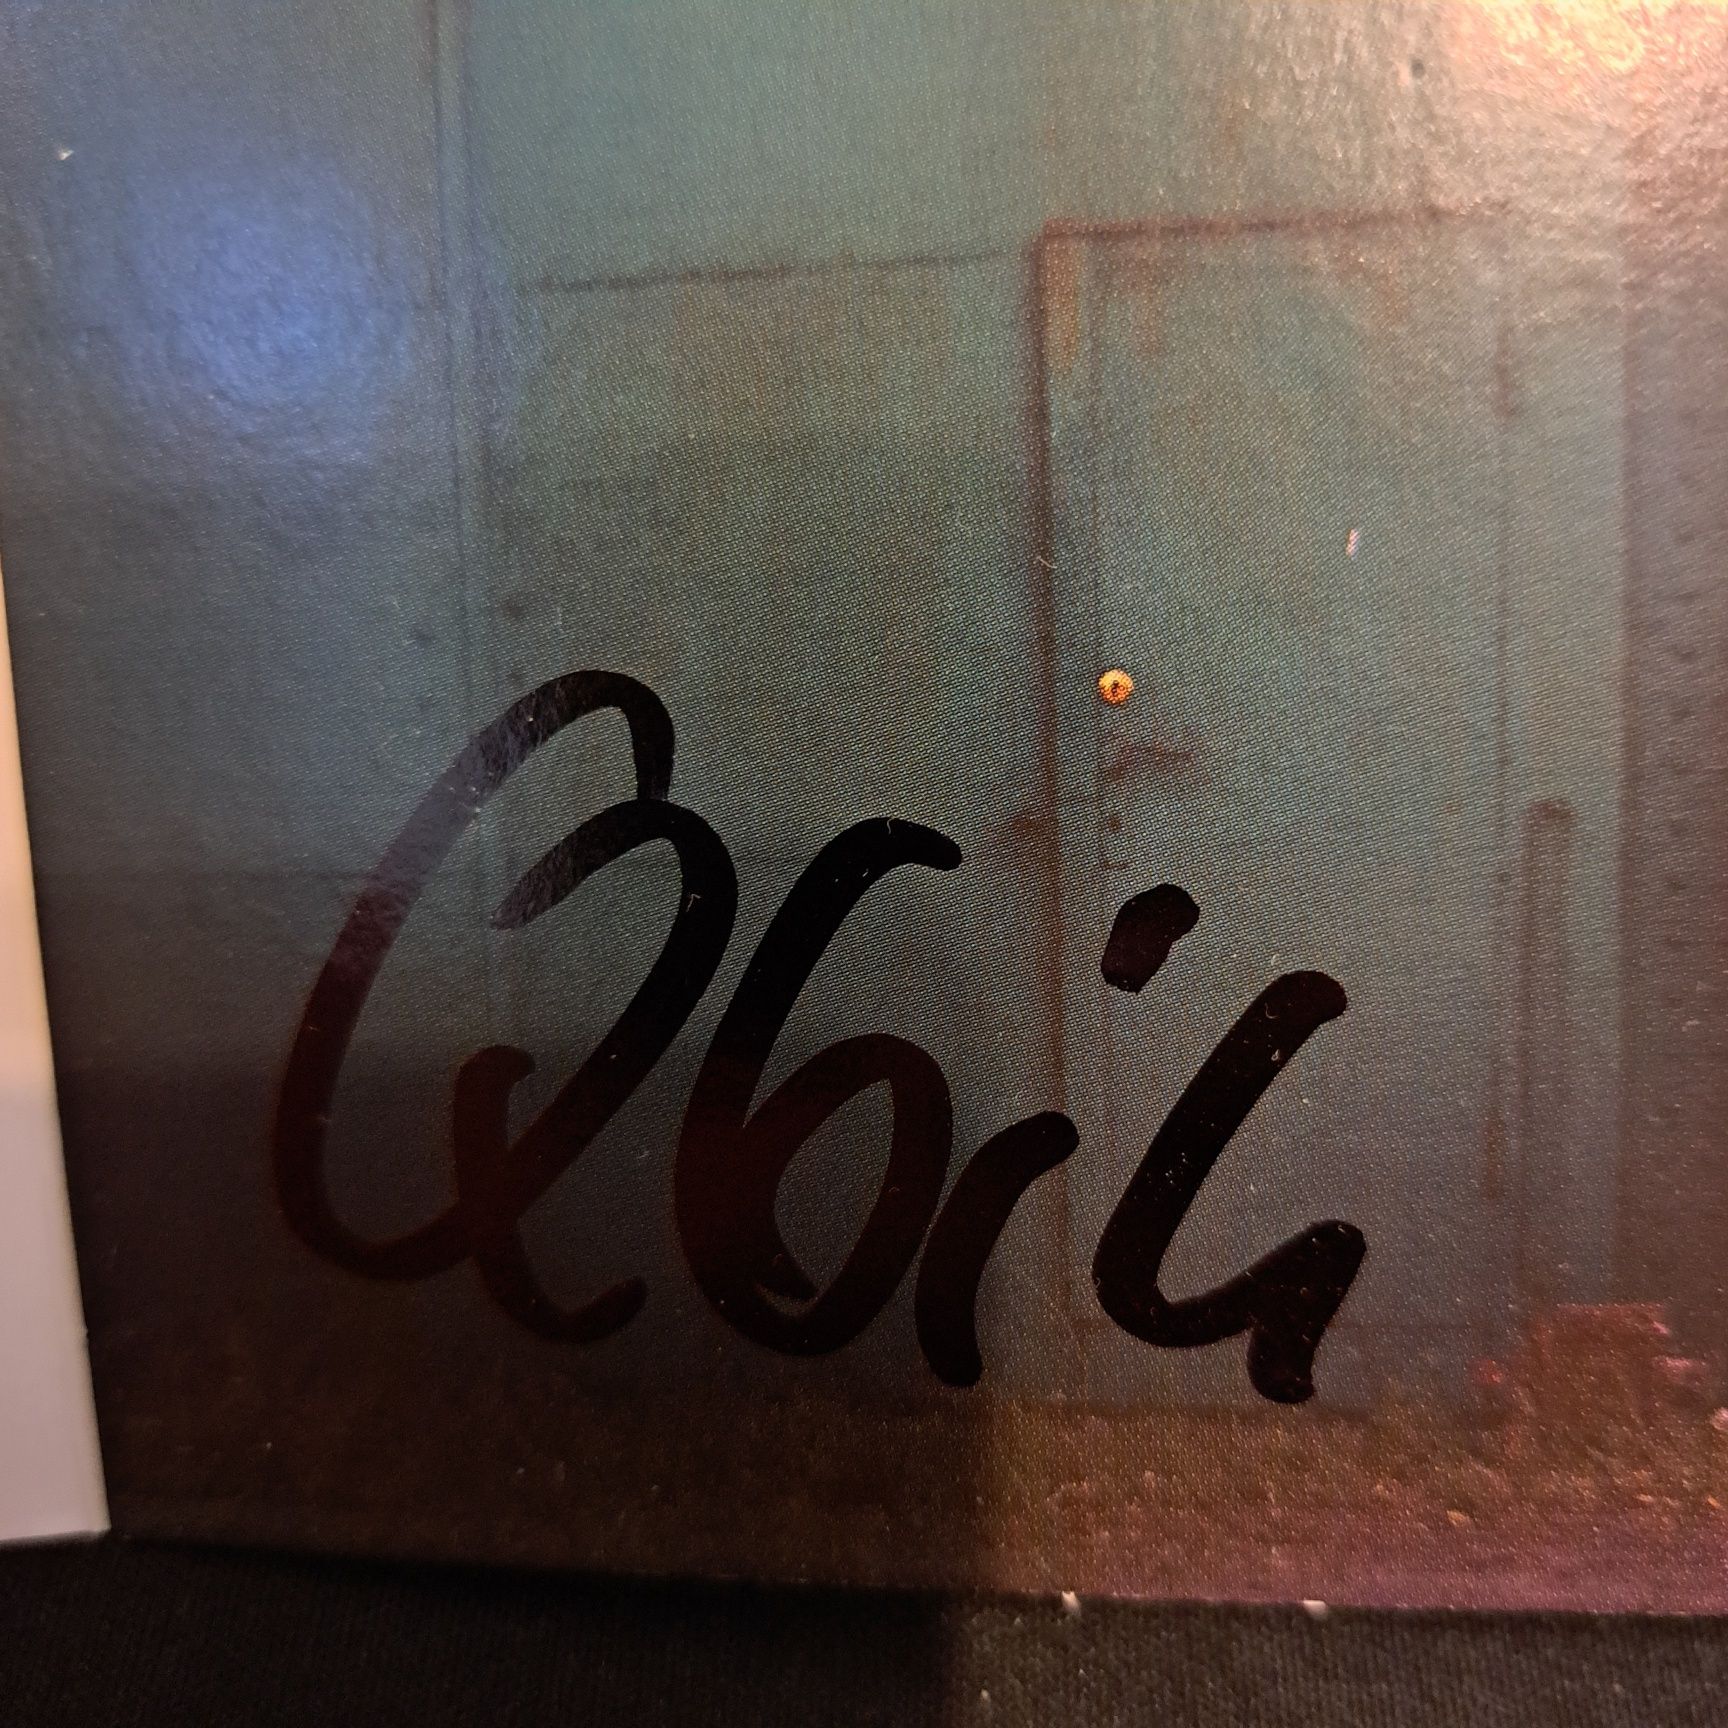 Płyta Qbik - Alkobus CD Autograf